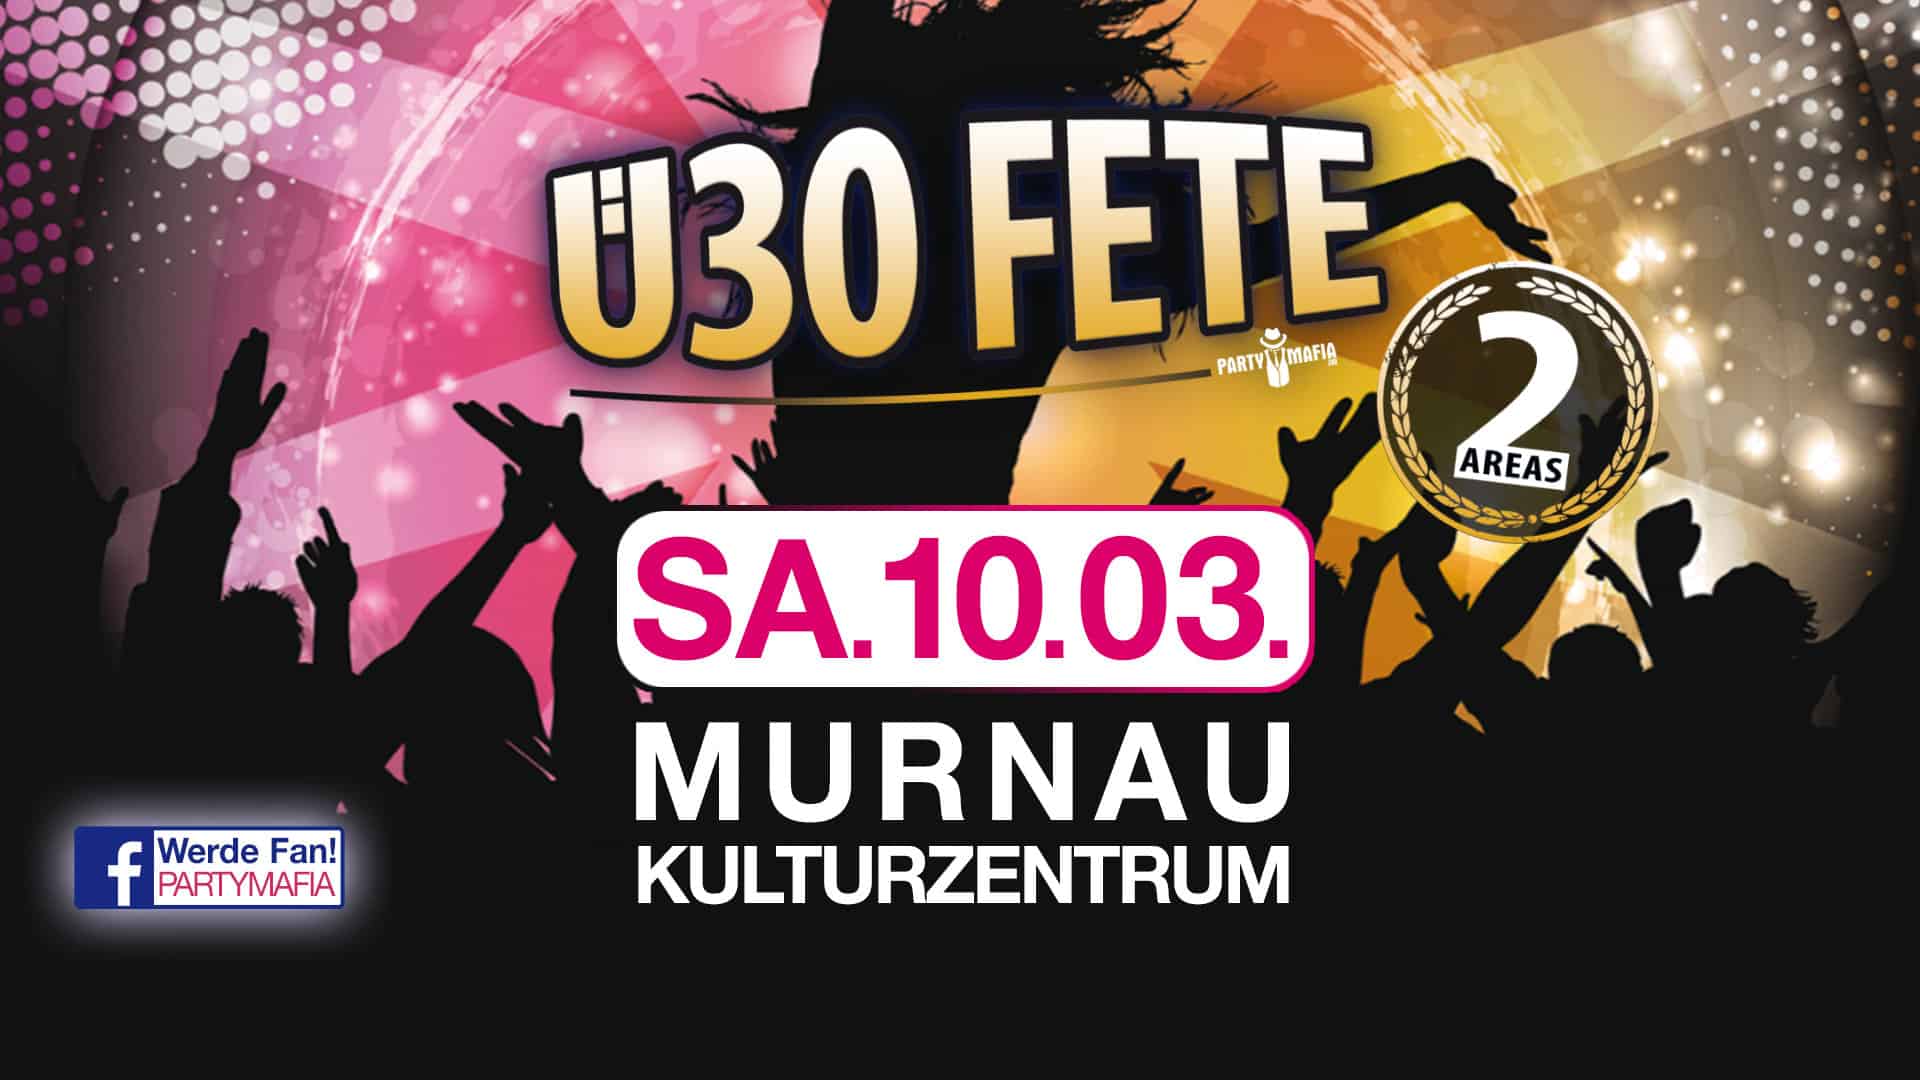 Das Ü30 Party Highlight in Murnau: Die Ü30 FETE